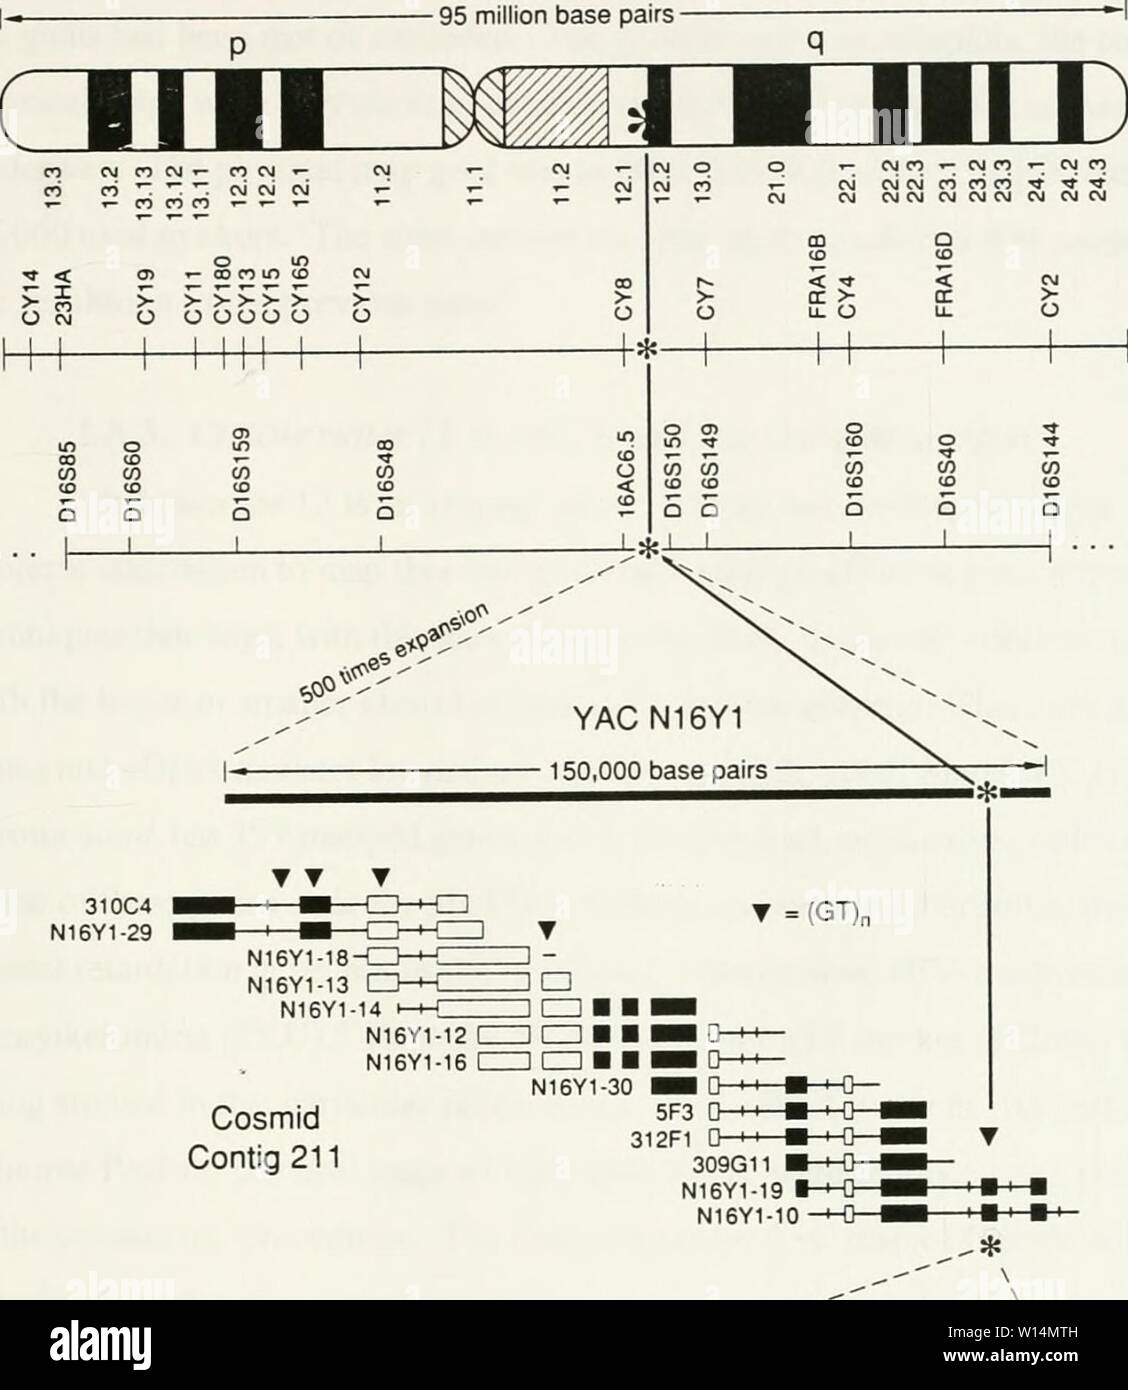 Archiv Bild von Seite 20 der Entwicklung einer cosmid. Die Entwicklung einer cosmid Karte von Chromosom 12 p 13. developmentofcos 00 belk Jahr: 1998 Chromosom 16 Cosmid Contig 211? ,Ooj'. esff'. Oso - - - STS N16 Y 1-10 Primer t3-AGTCAAflCCTTTCCGGCCTAl zytogenetischen Karte (Auflösung von in-situ-Hybridisierung 3-4 megabases) Zytogenetische Haltepunkt Karte (Auflösung 1,6 megabases; nicht alle Haltepunkte werden angezeigt) Genetische - Gestänge Karte (Auflösung 3-5 centimorgans; nicht alle Gestänge Markierungen werden angezeigt) Physische Karte von überlappenden cosmid Klone (Auflösung 5-10 Kilobases) 9 5 GATCAAGGCGTTACATGA-3") Primer I - 21. Stockfoto